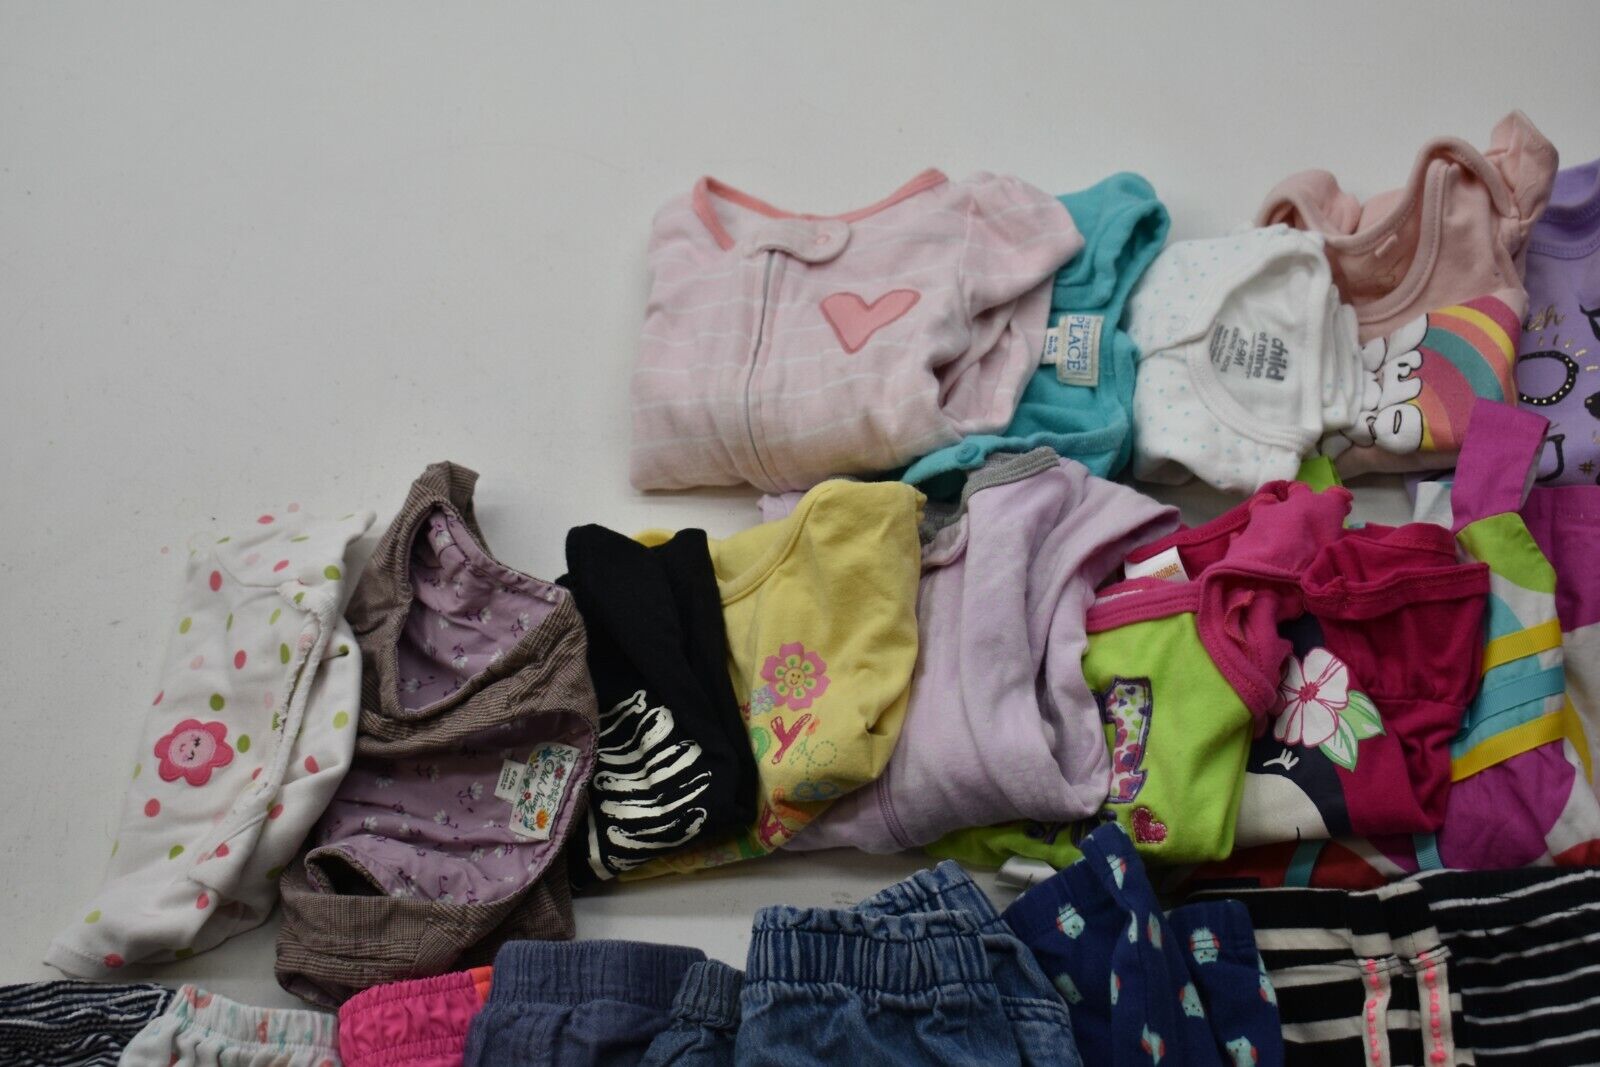 Wholesale Bulk Lot of 35 Girls Size 6-12 Mixed Season Pants Shirts Bottoms Mixed Brand - фотография #4